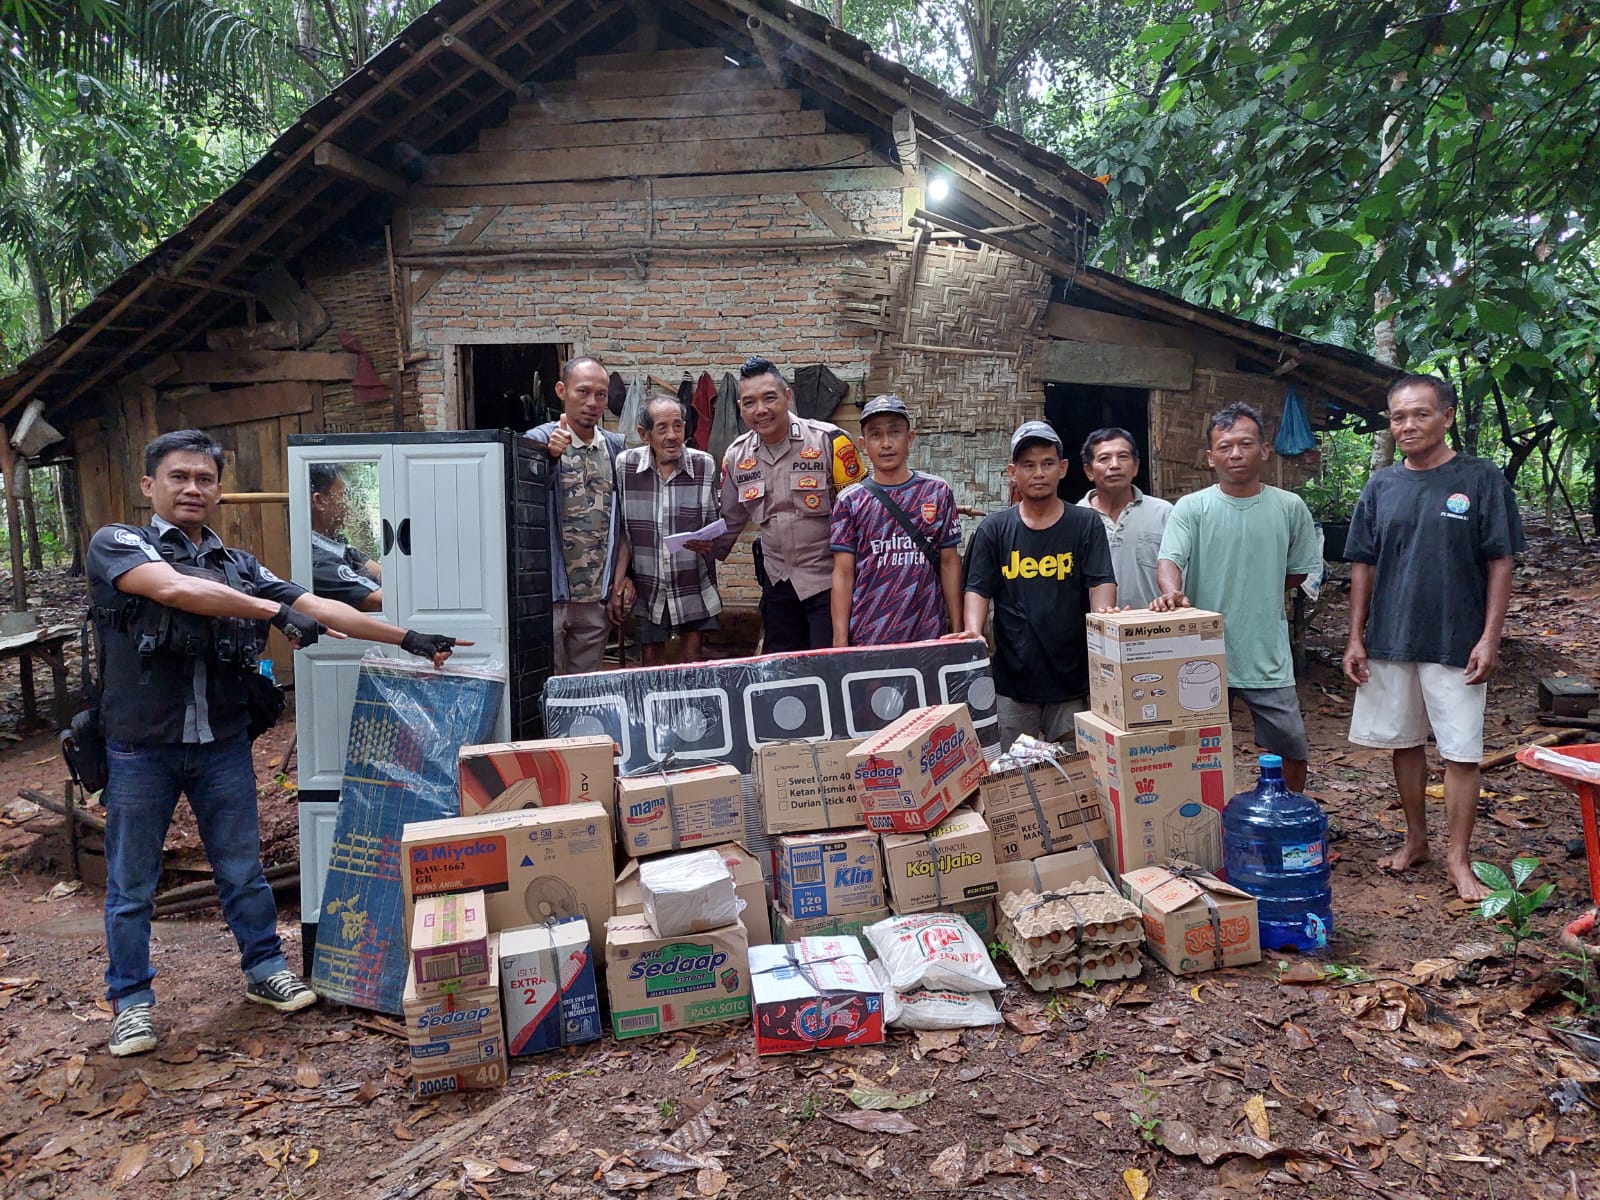 Polisi Penolong Masyarakat, Bripka Leonardo Kembali Bantu Masyarakat Yang Membutuhkan di Lampung Tengah